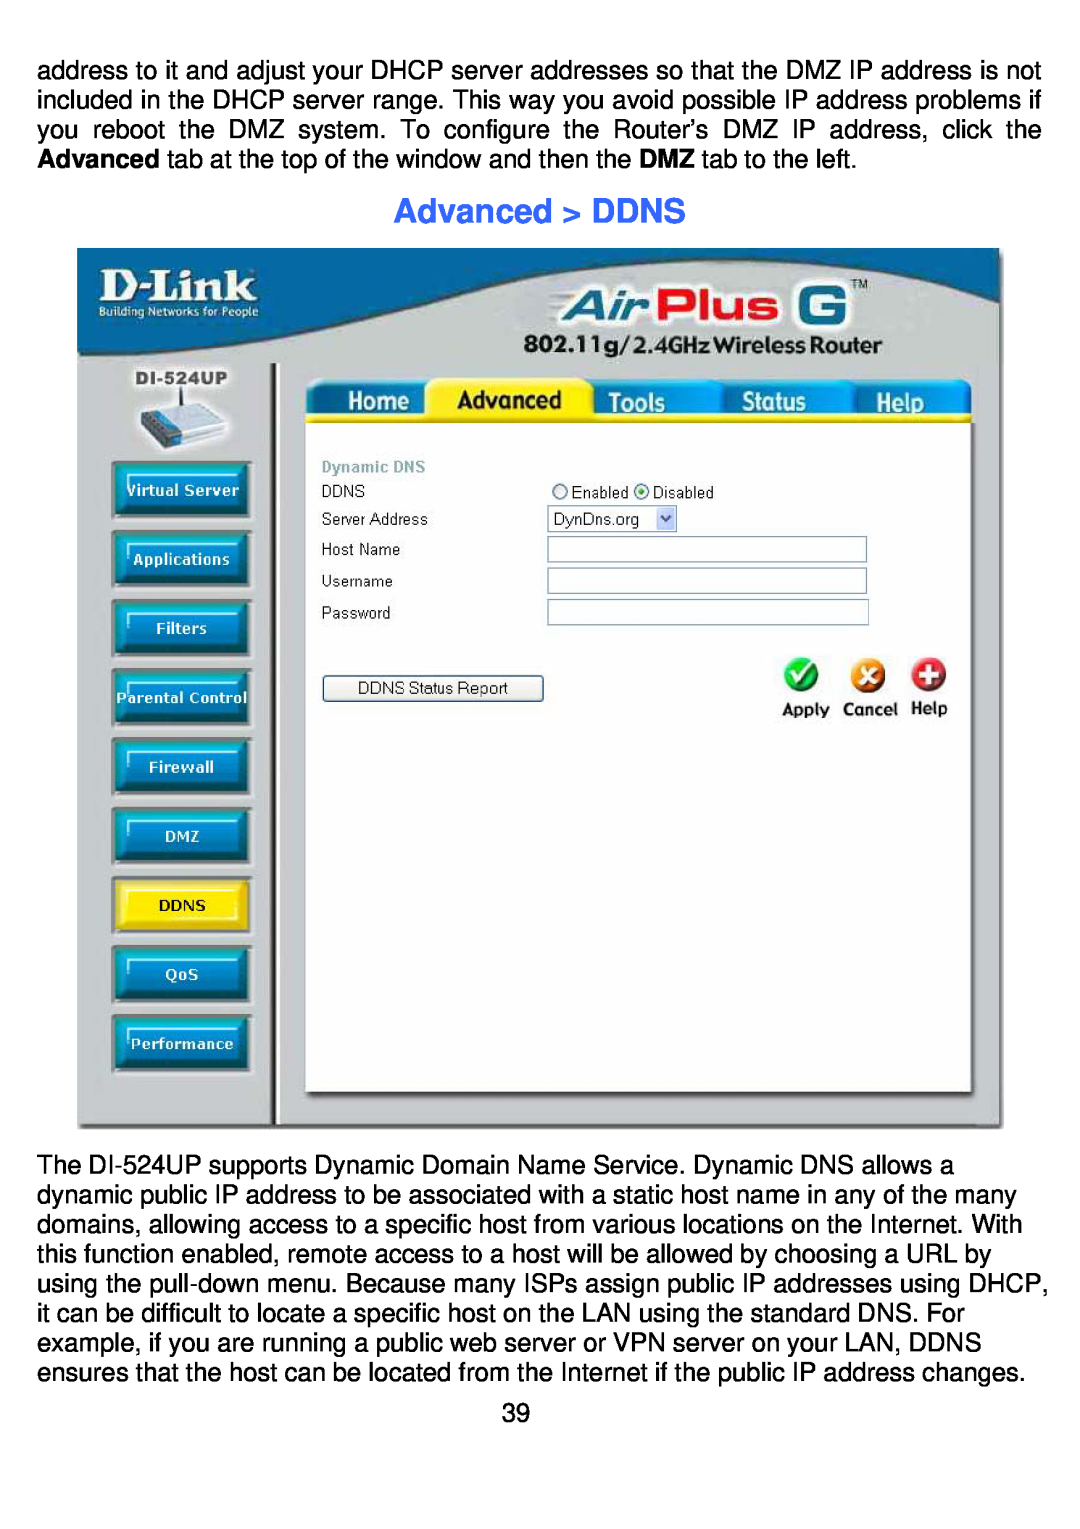 D-Link DI-524UP manual Advanced DDNS 